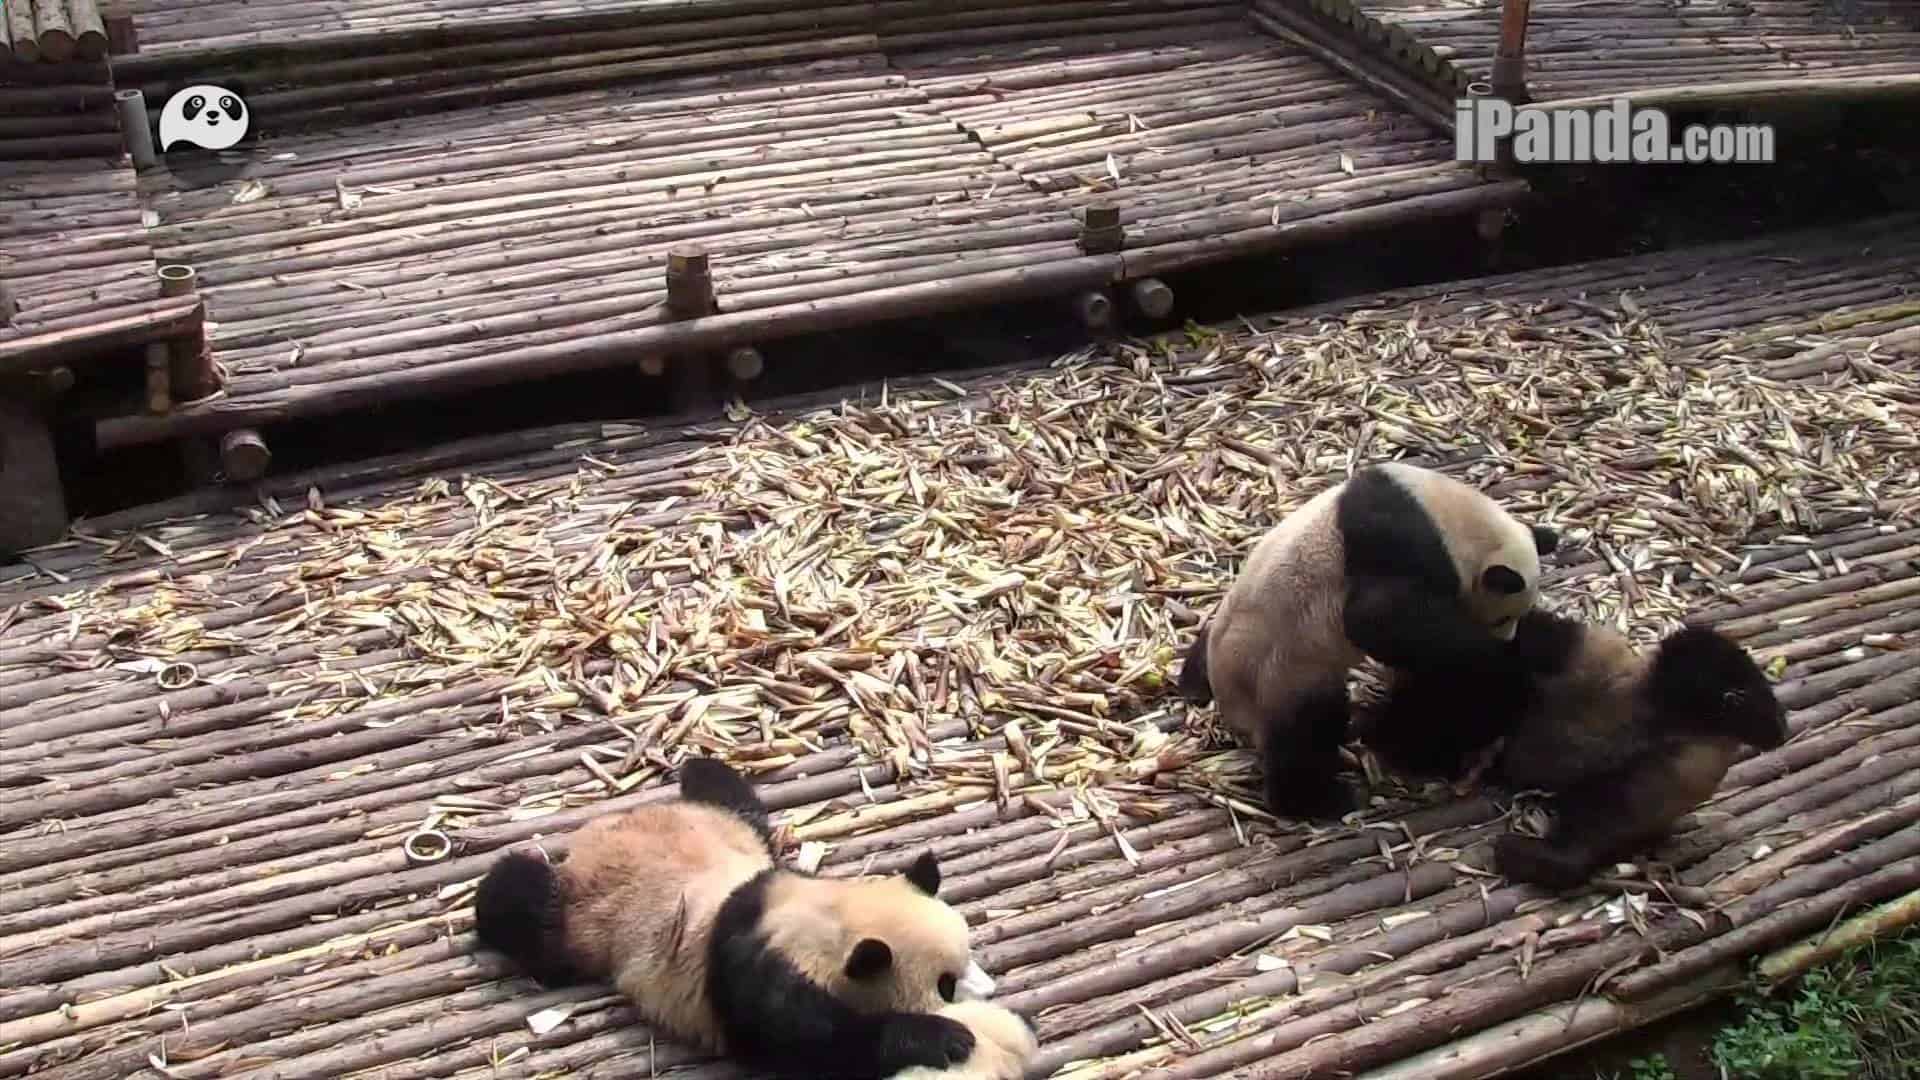 Wrestling pandas